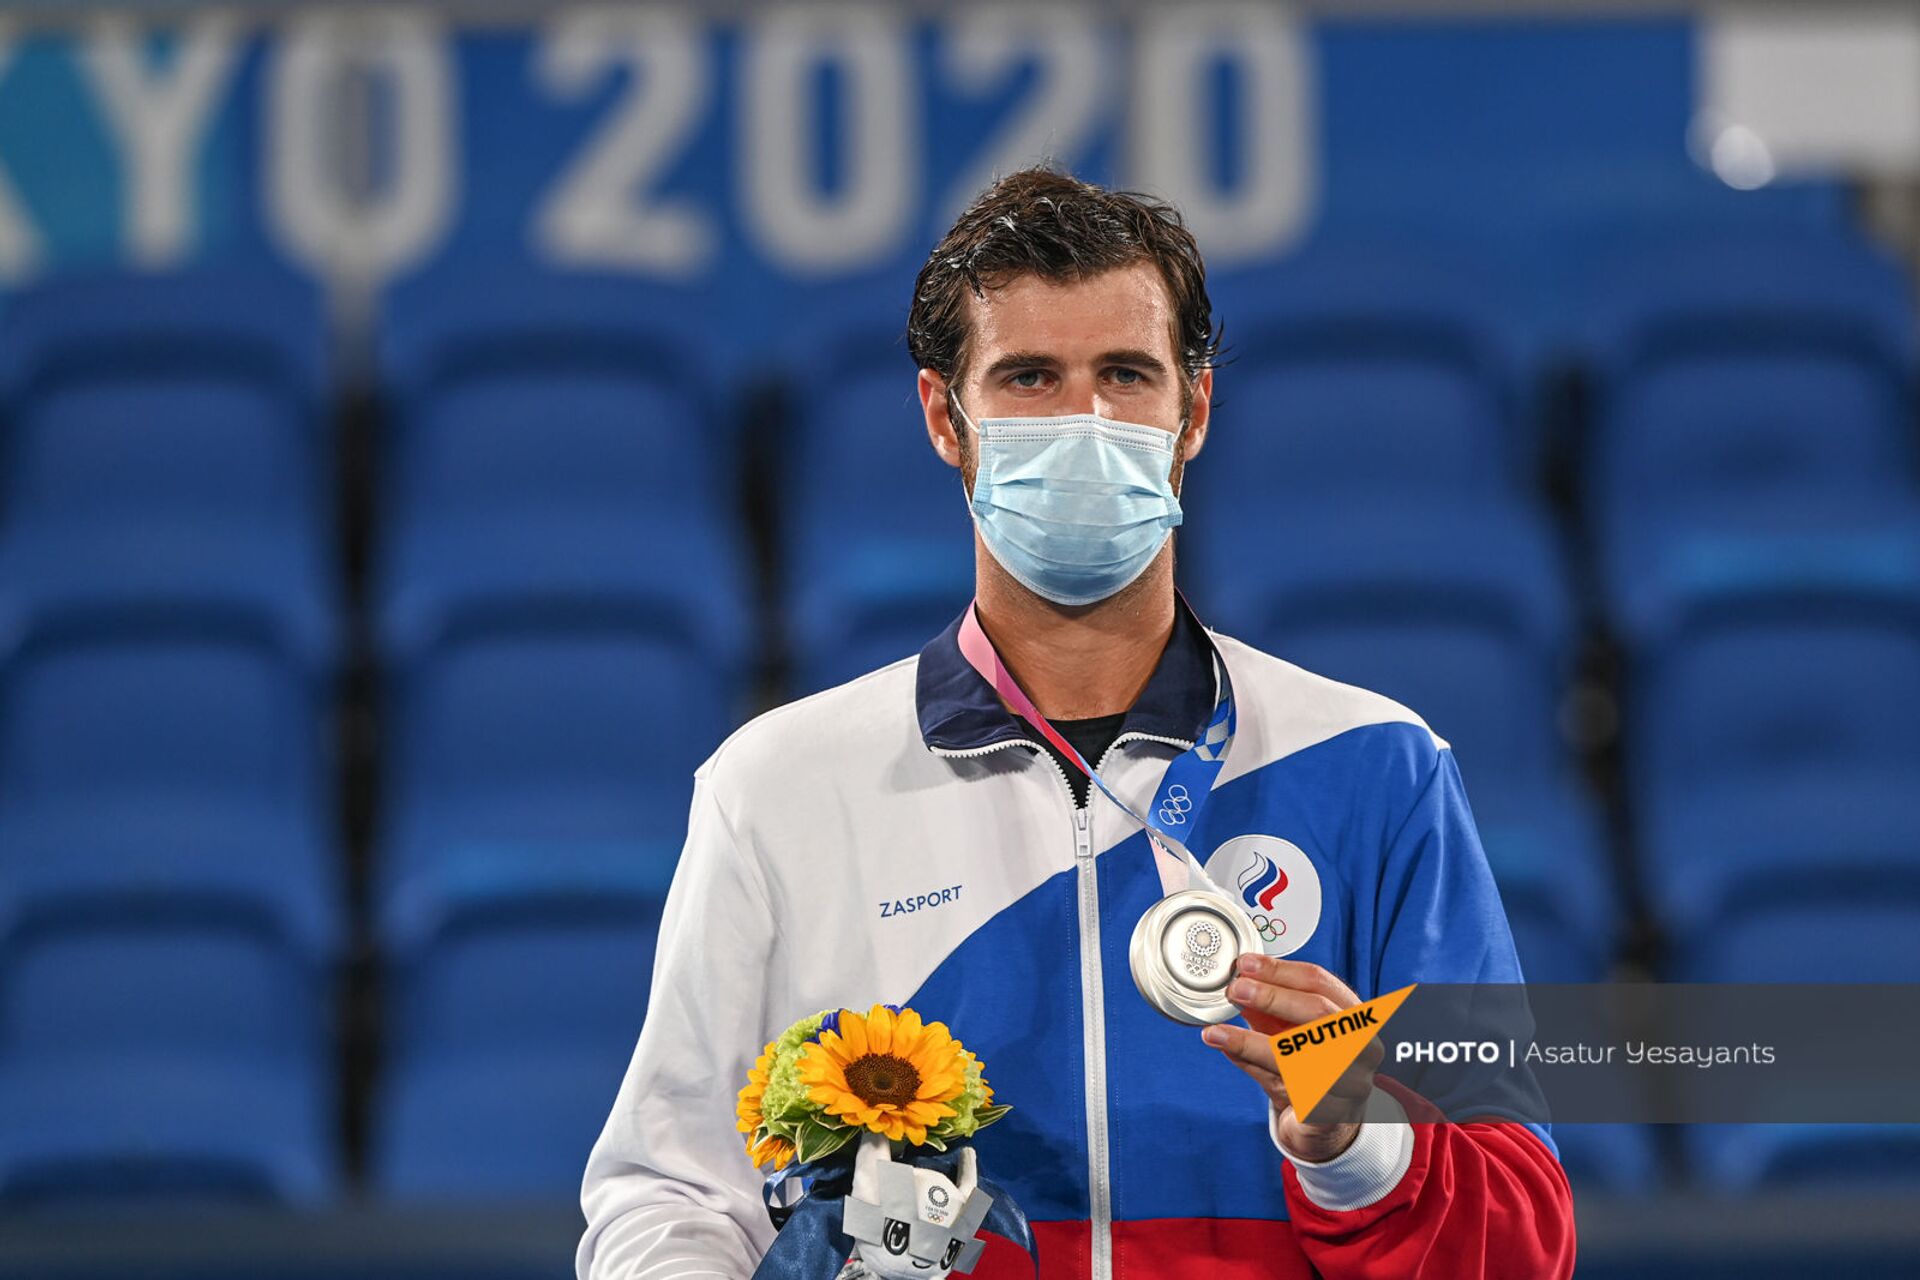  Карен Хачанов во время награждения серебряной медалью  мужского теннисного турнира Олимпийских игр в Токио (1 августа 2021). Япония - Sputnik Армения, 1920, 14.09.2021